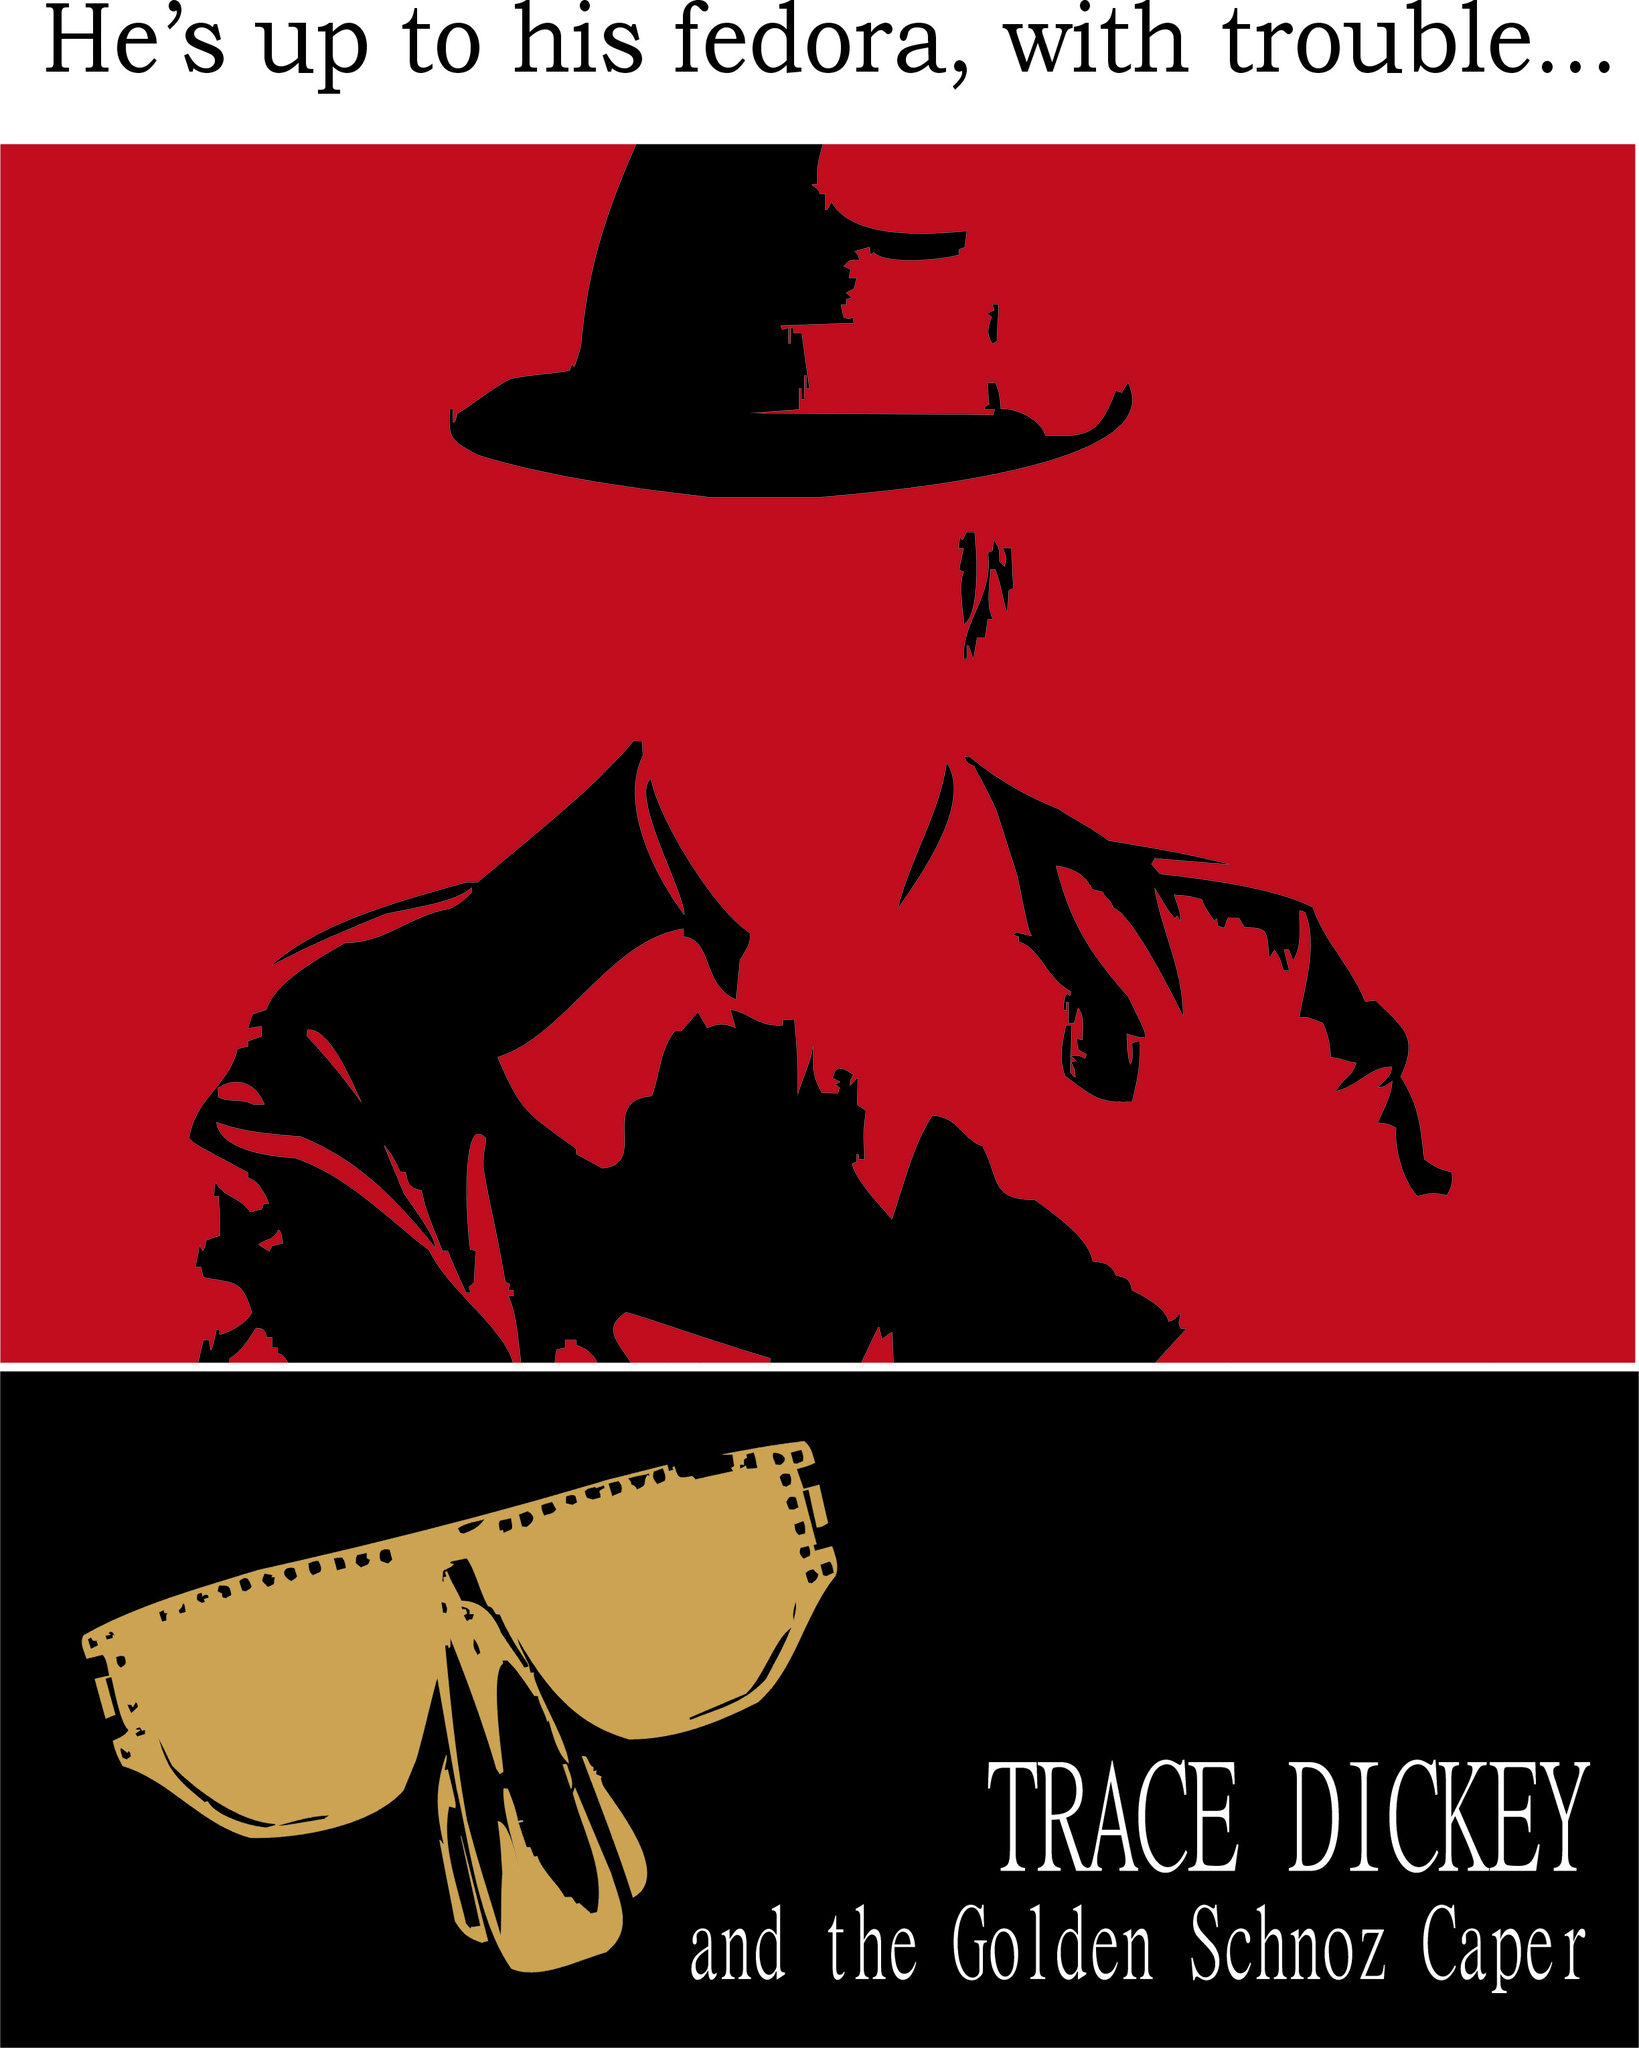 TRACE DICKEY & THE GOLDEN SCHNOZ CAPER